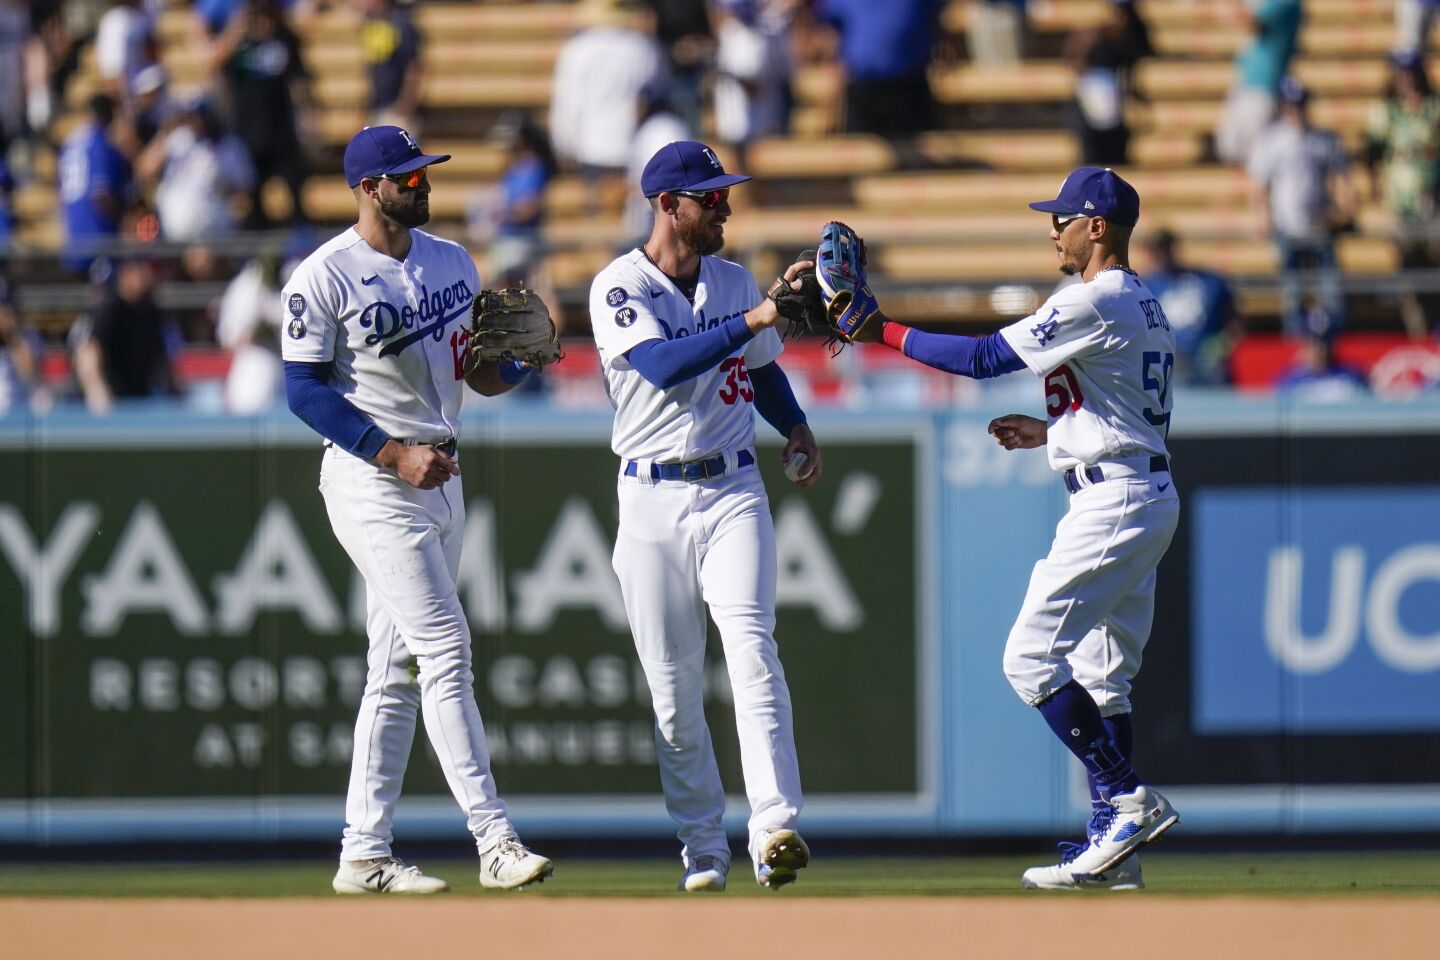 De izquierda a derecha: Joey Gallo, Cody Bellinger y Mookie Betts, de los Dodgers de Los Ángeles, celebran la victoria en el juego de béisbol en contra de Cardinals de San Luis, el domingo 25, 2022, in Los Angeles. (AP foto/Jae C. Hong)